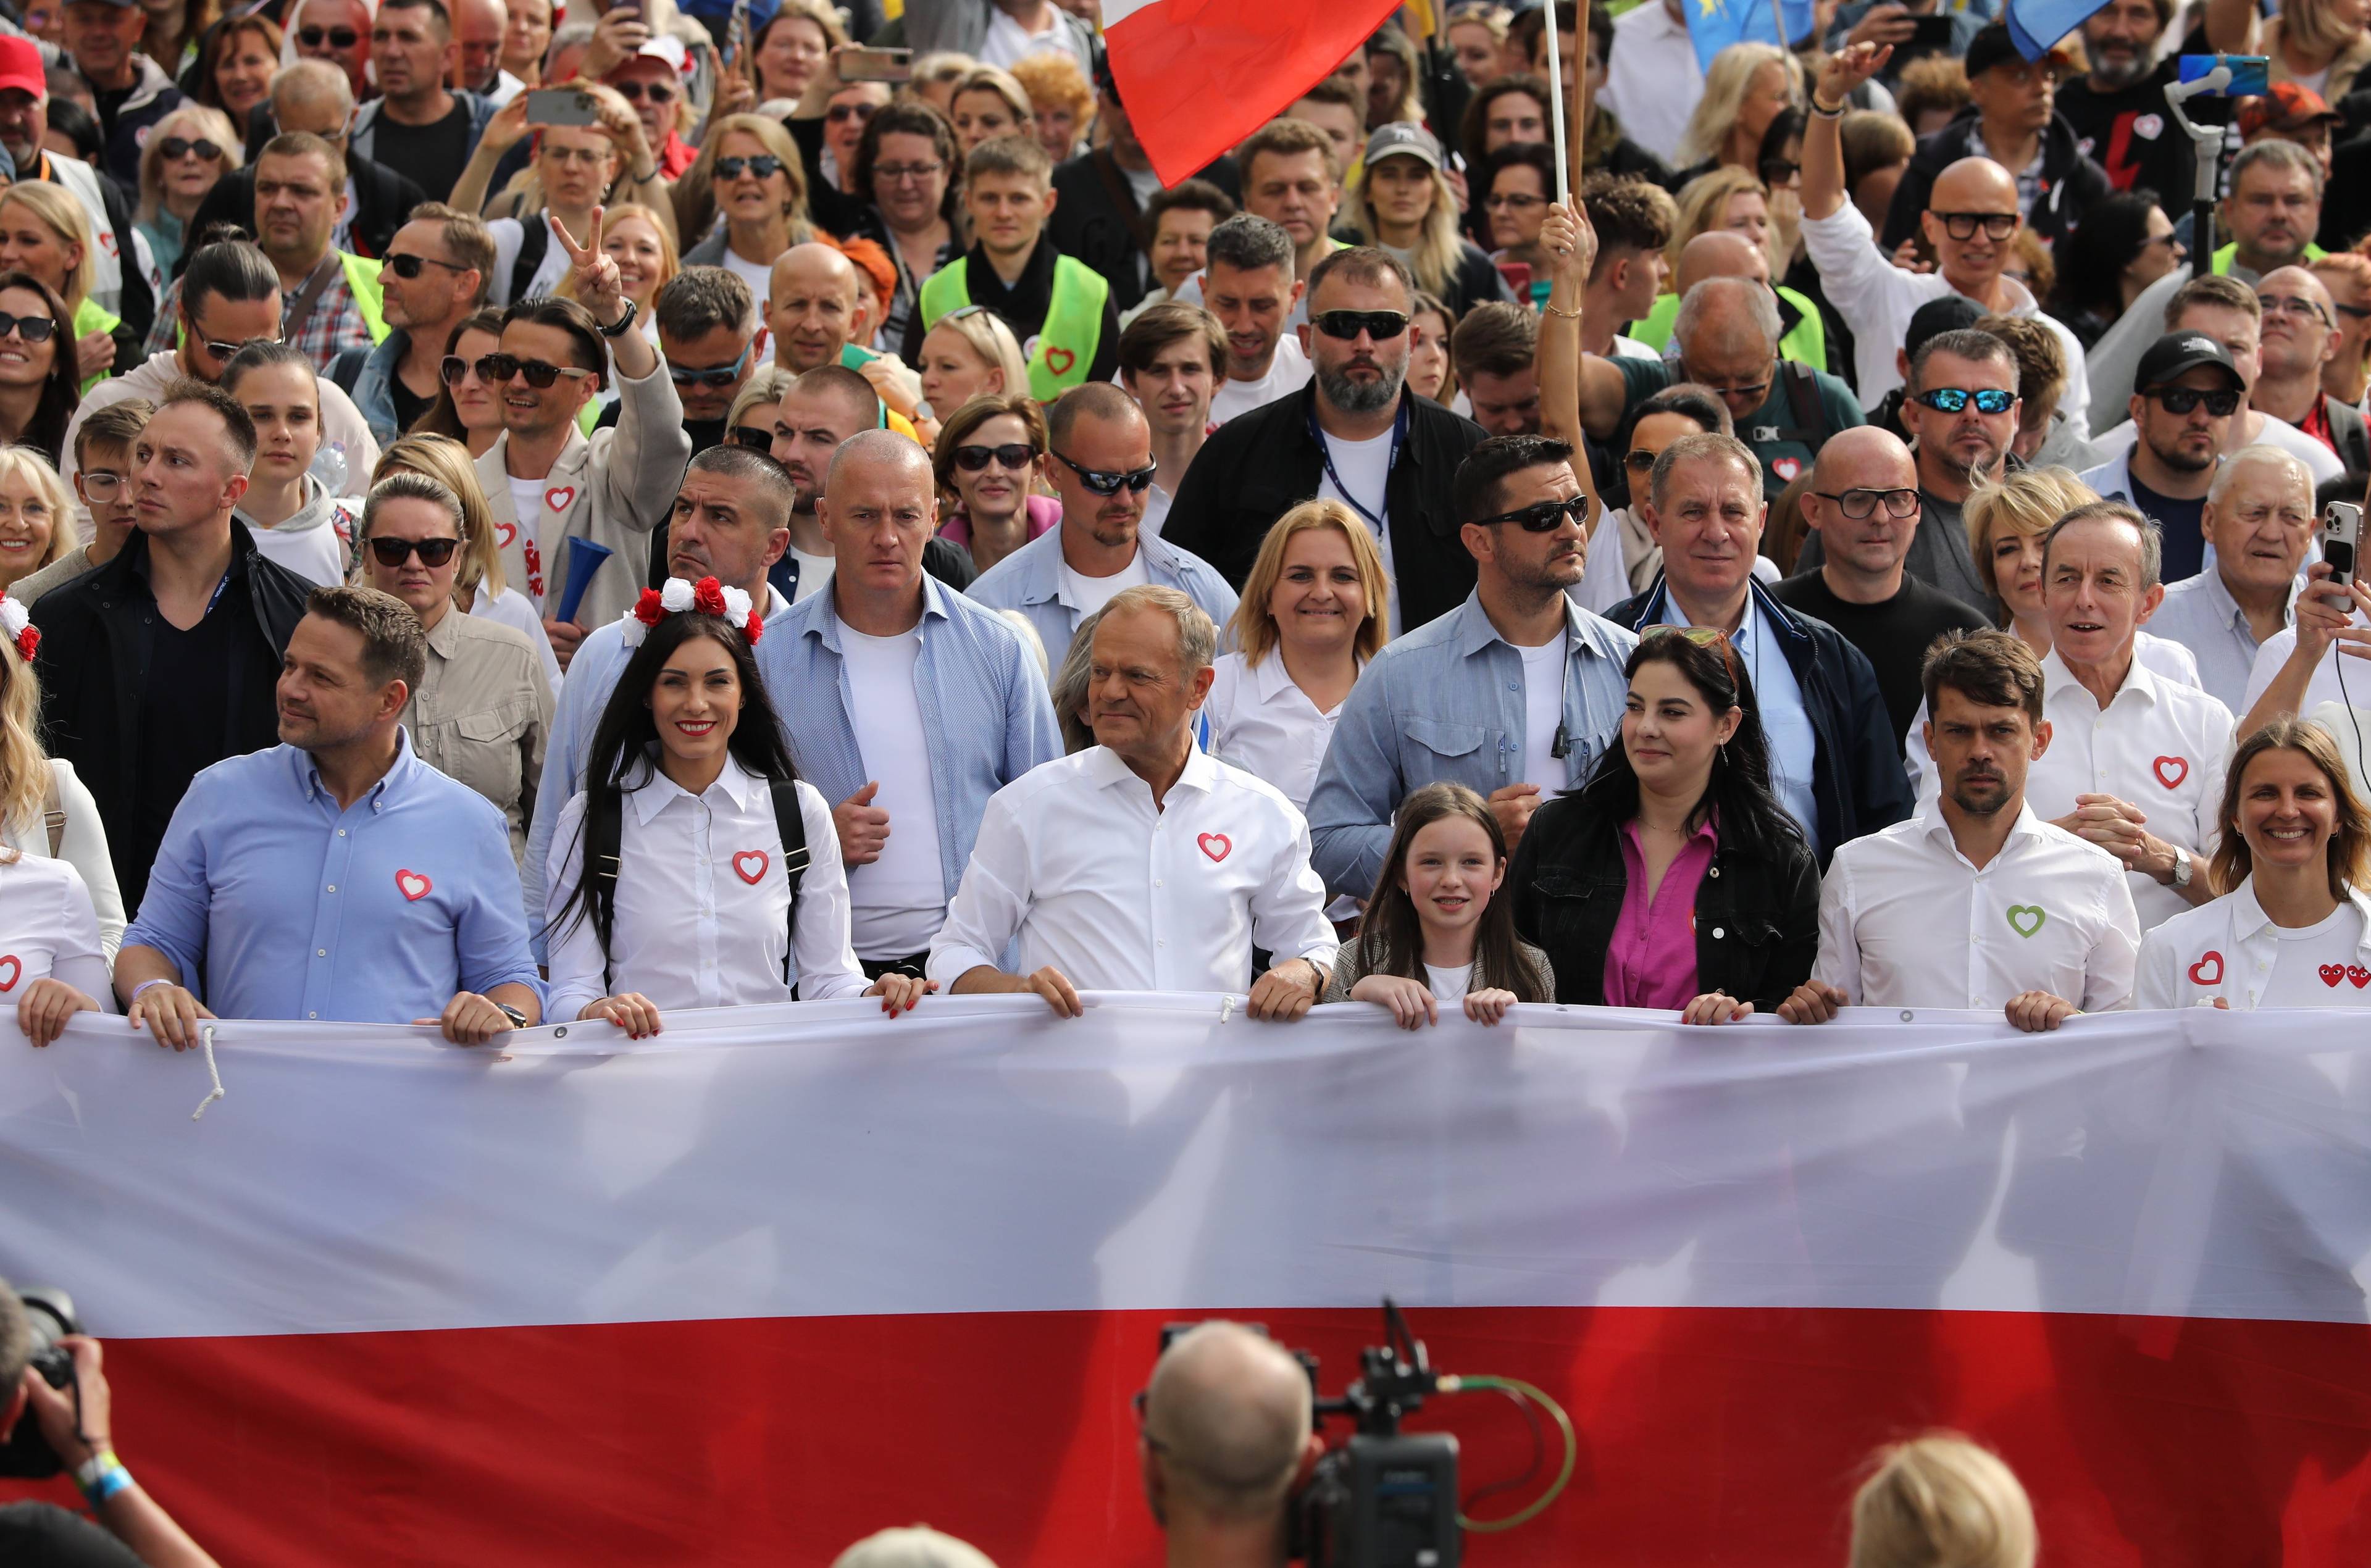 Tłum przechodzący ulicami Warszawy wypełnia zdjęcie, na czele polską flagę trzymają politycy opozycji, wśród nich Donald Tusk